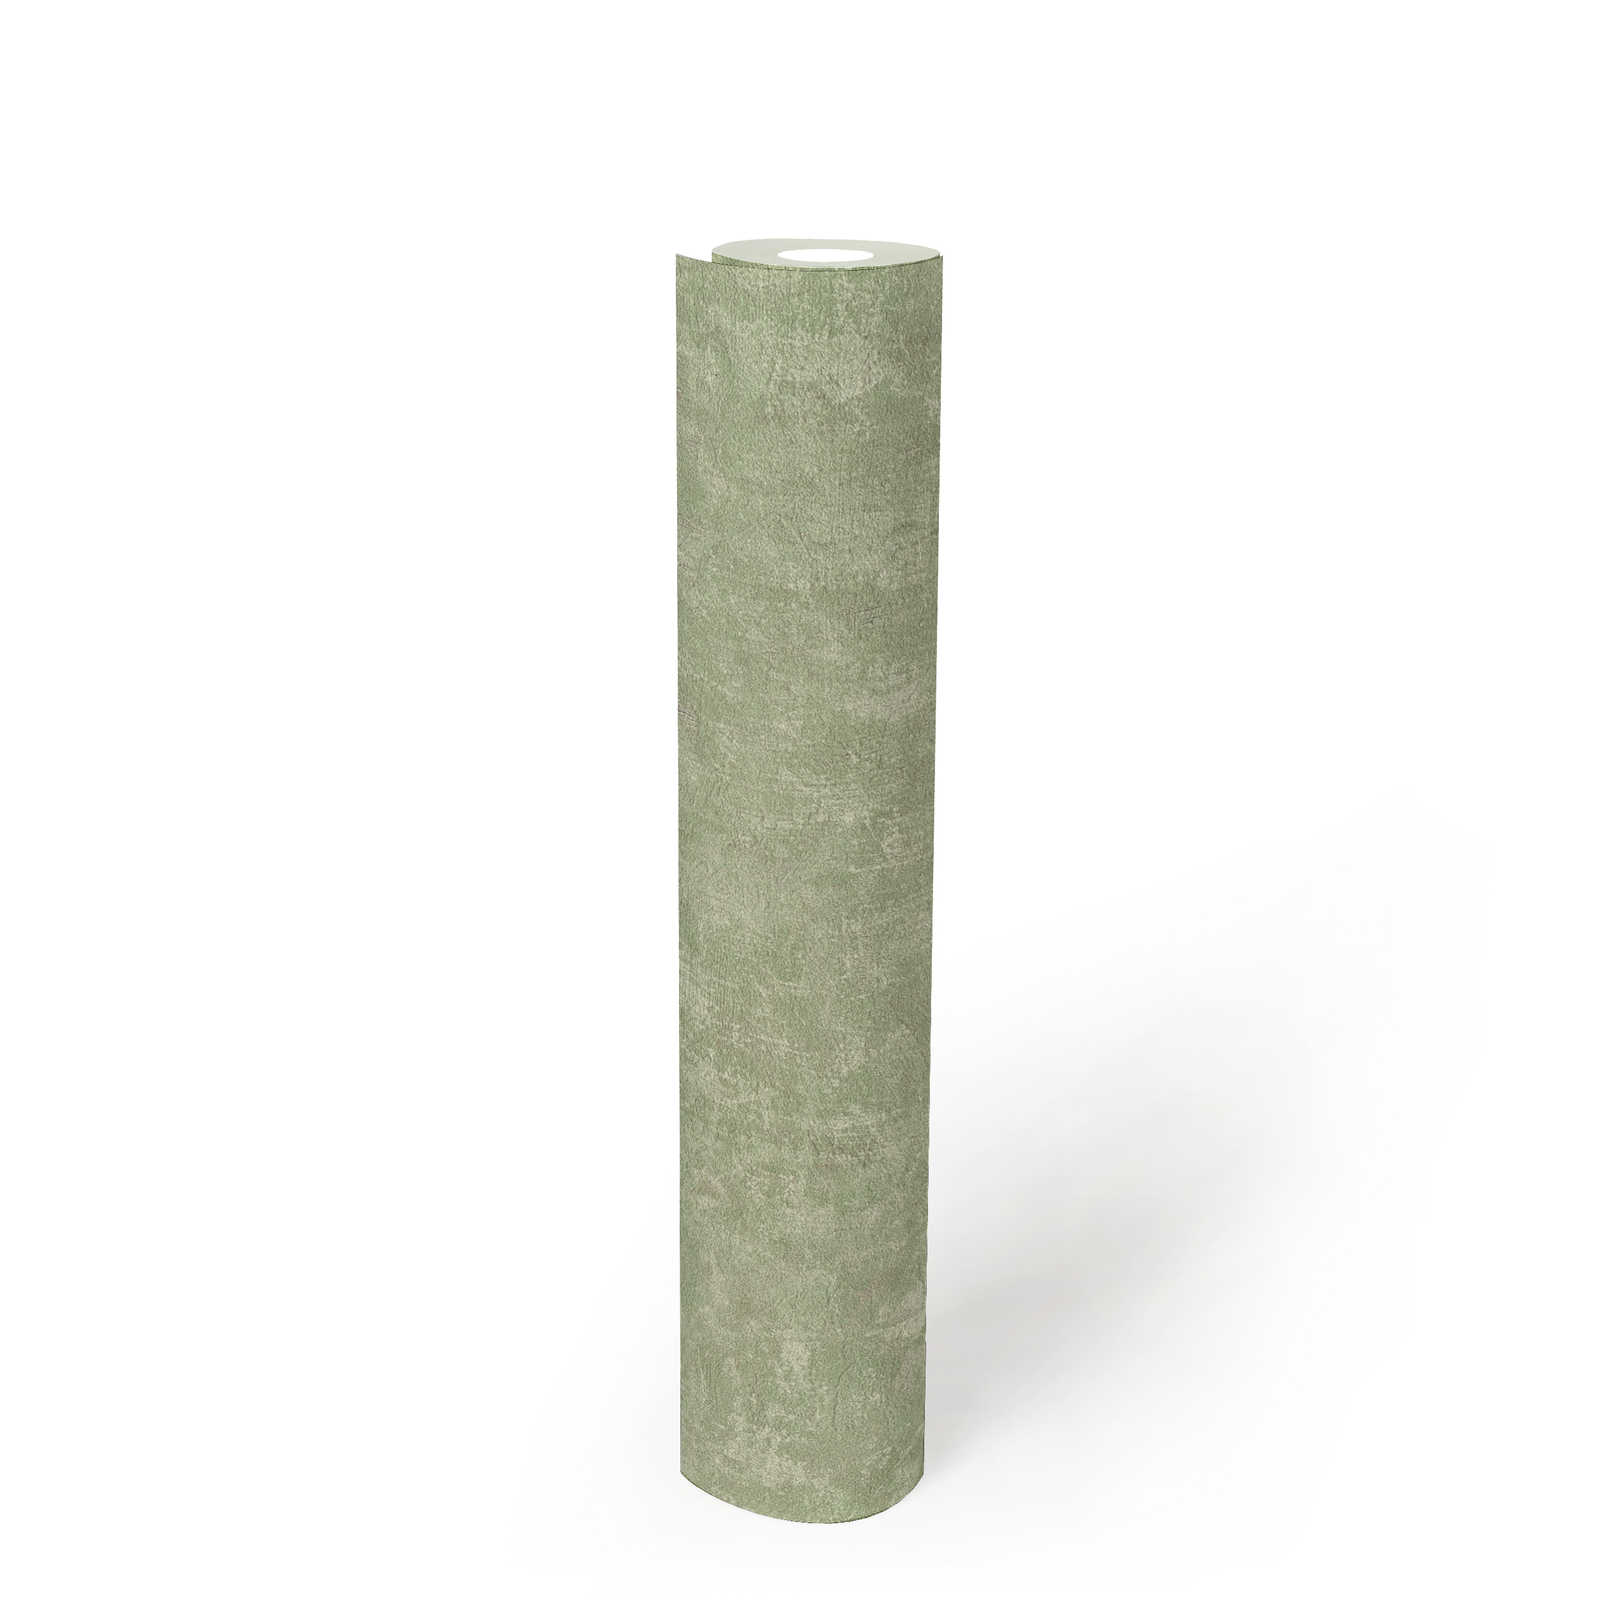             Vliesbehang met structuurpatroon PVC-vrij - groen
        